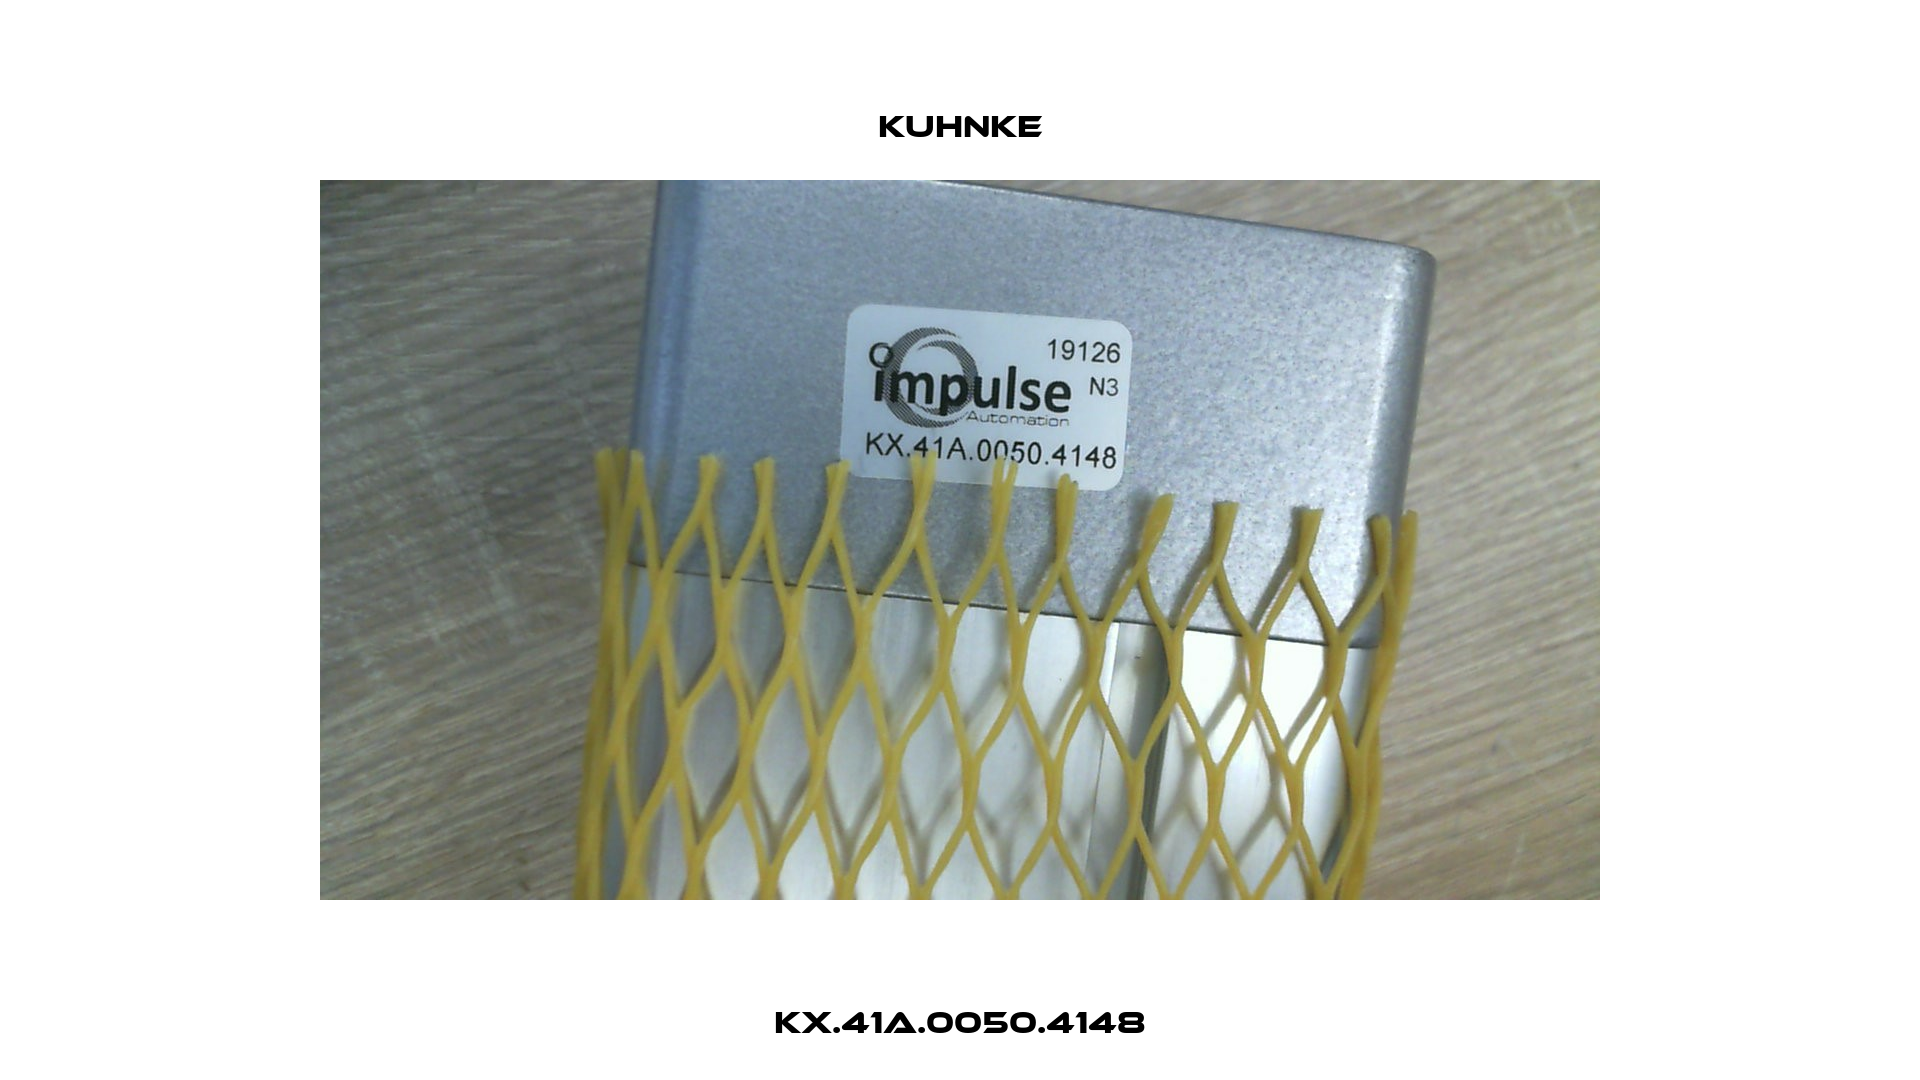 KX.41A.0050.4148 Kuhnke